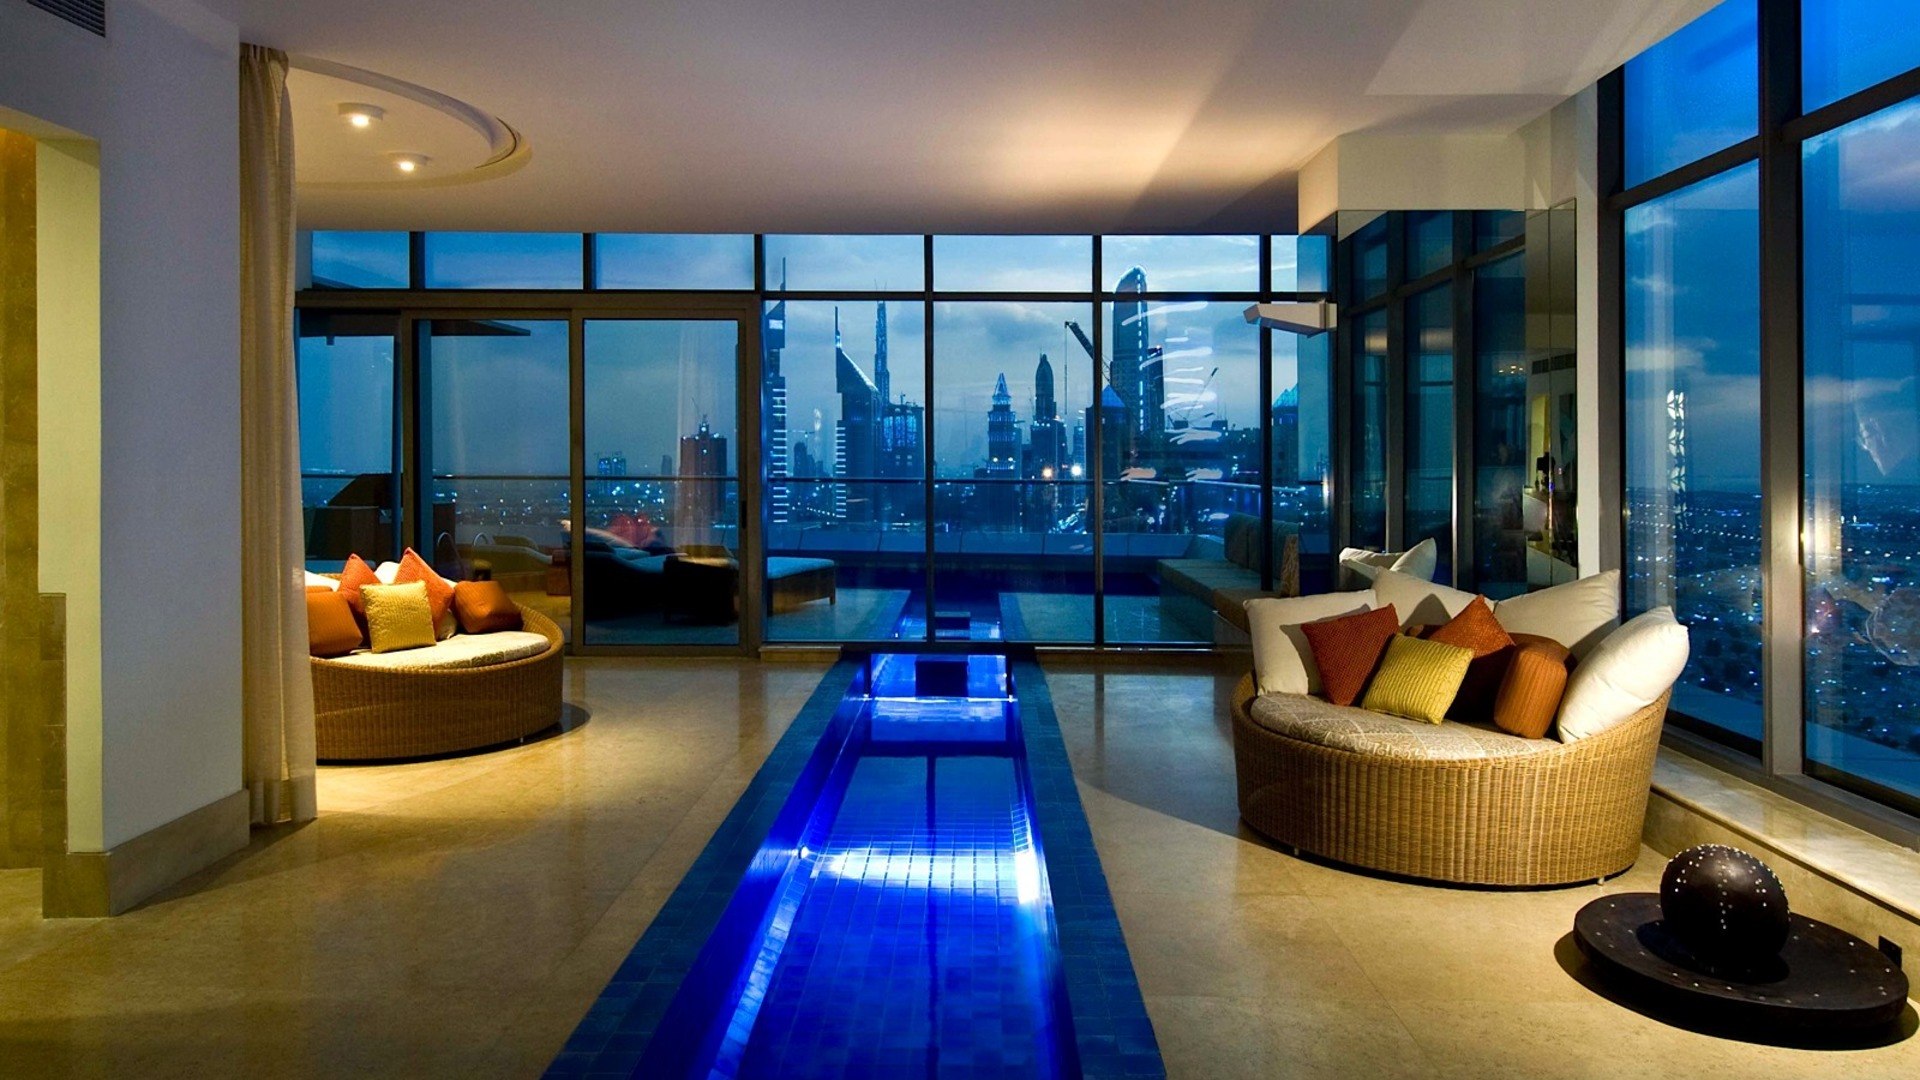 Видео красивых квартир. Гостиница Дубай лакшери. Пентхаус в Дубае. Шикарная комната. Красивая квартира.